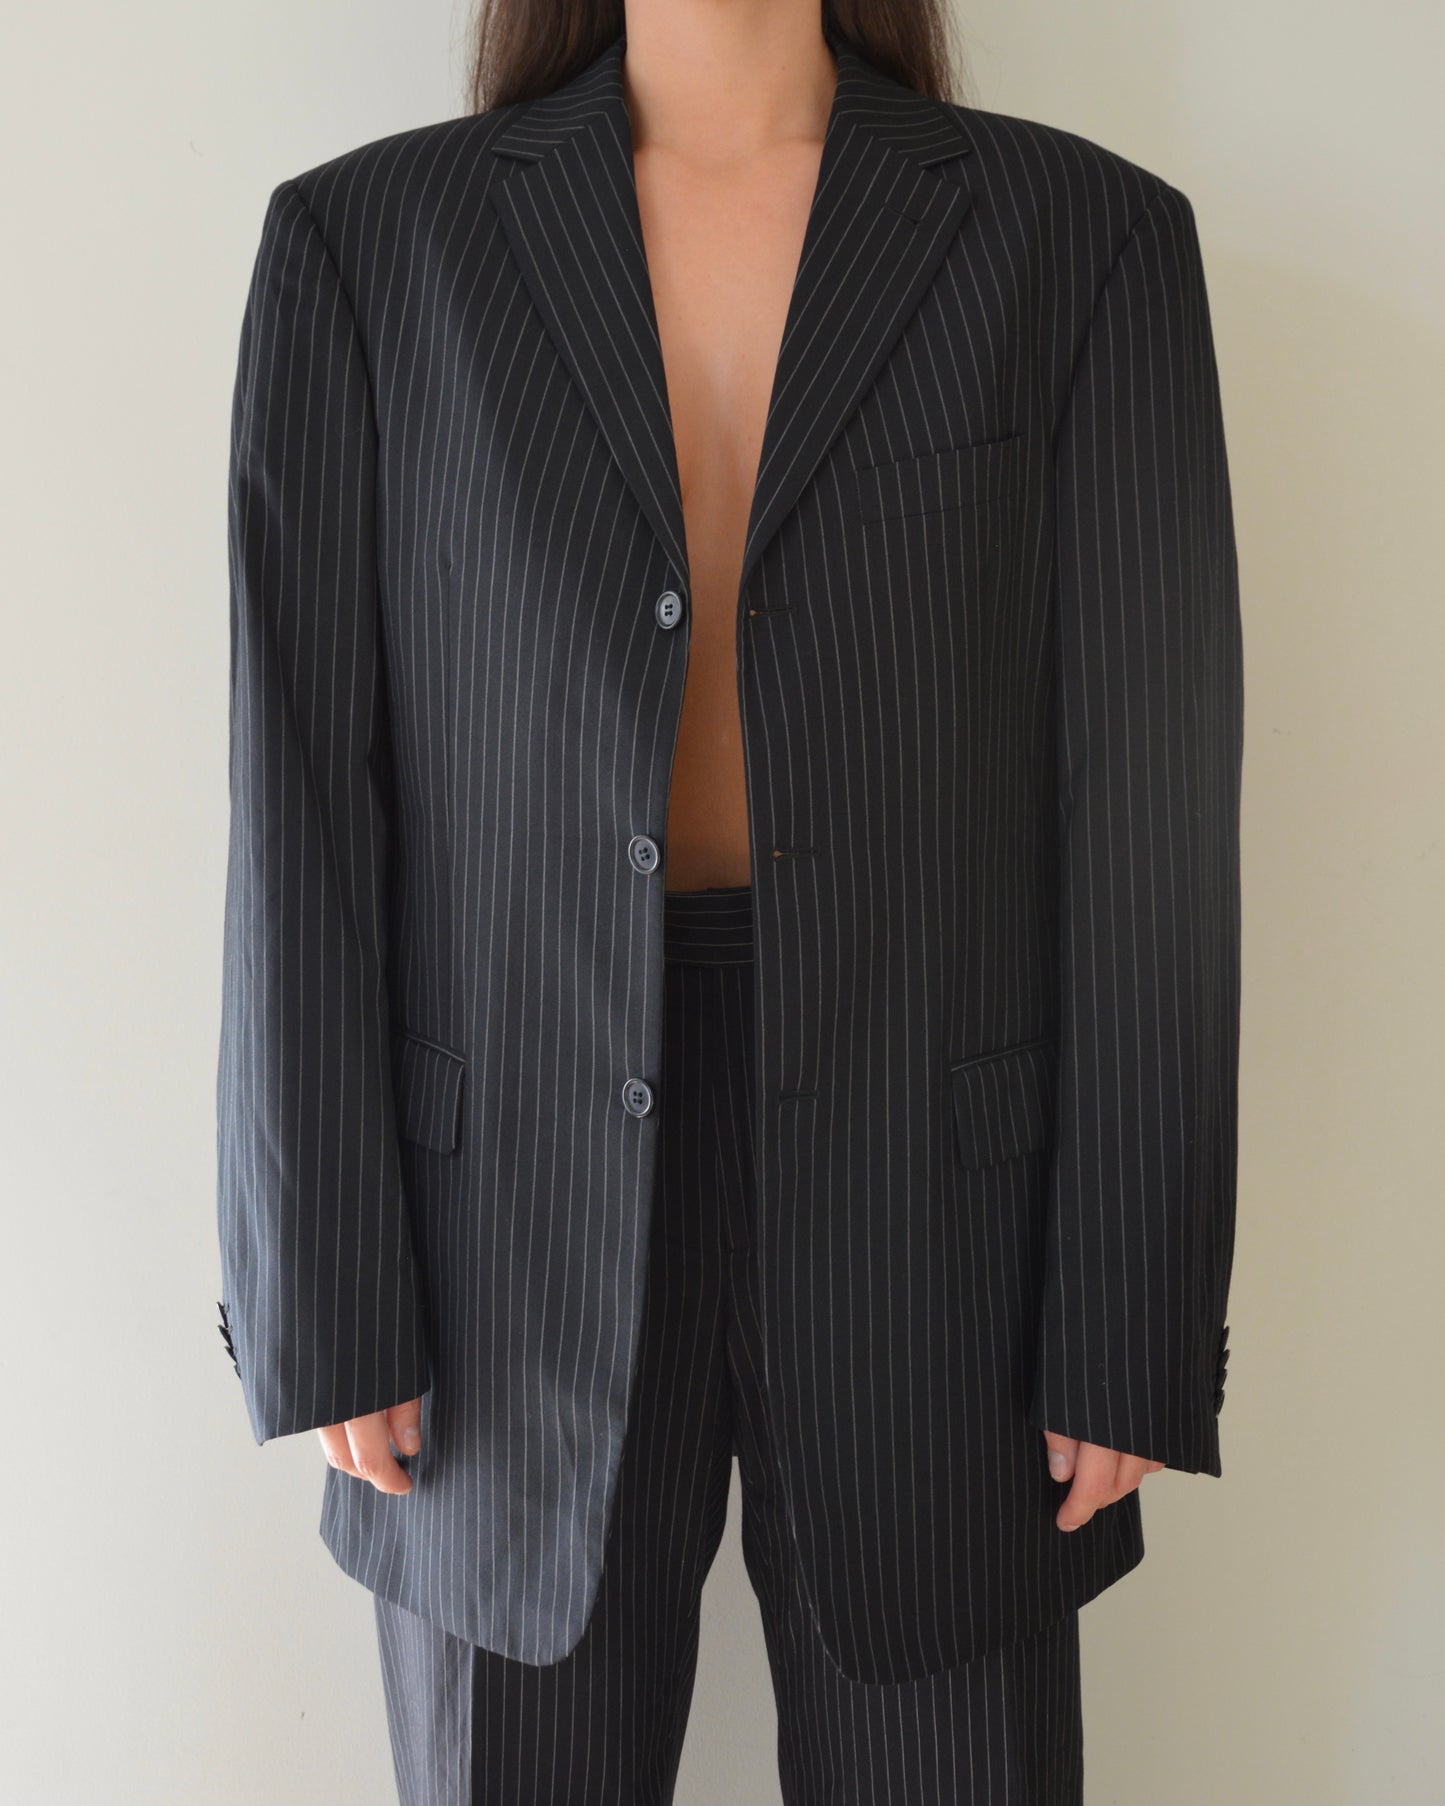 Suit - black striped (S/M)